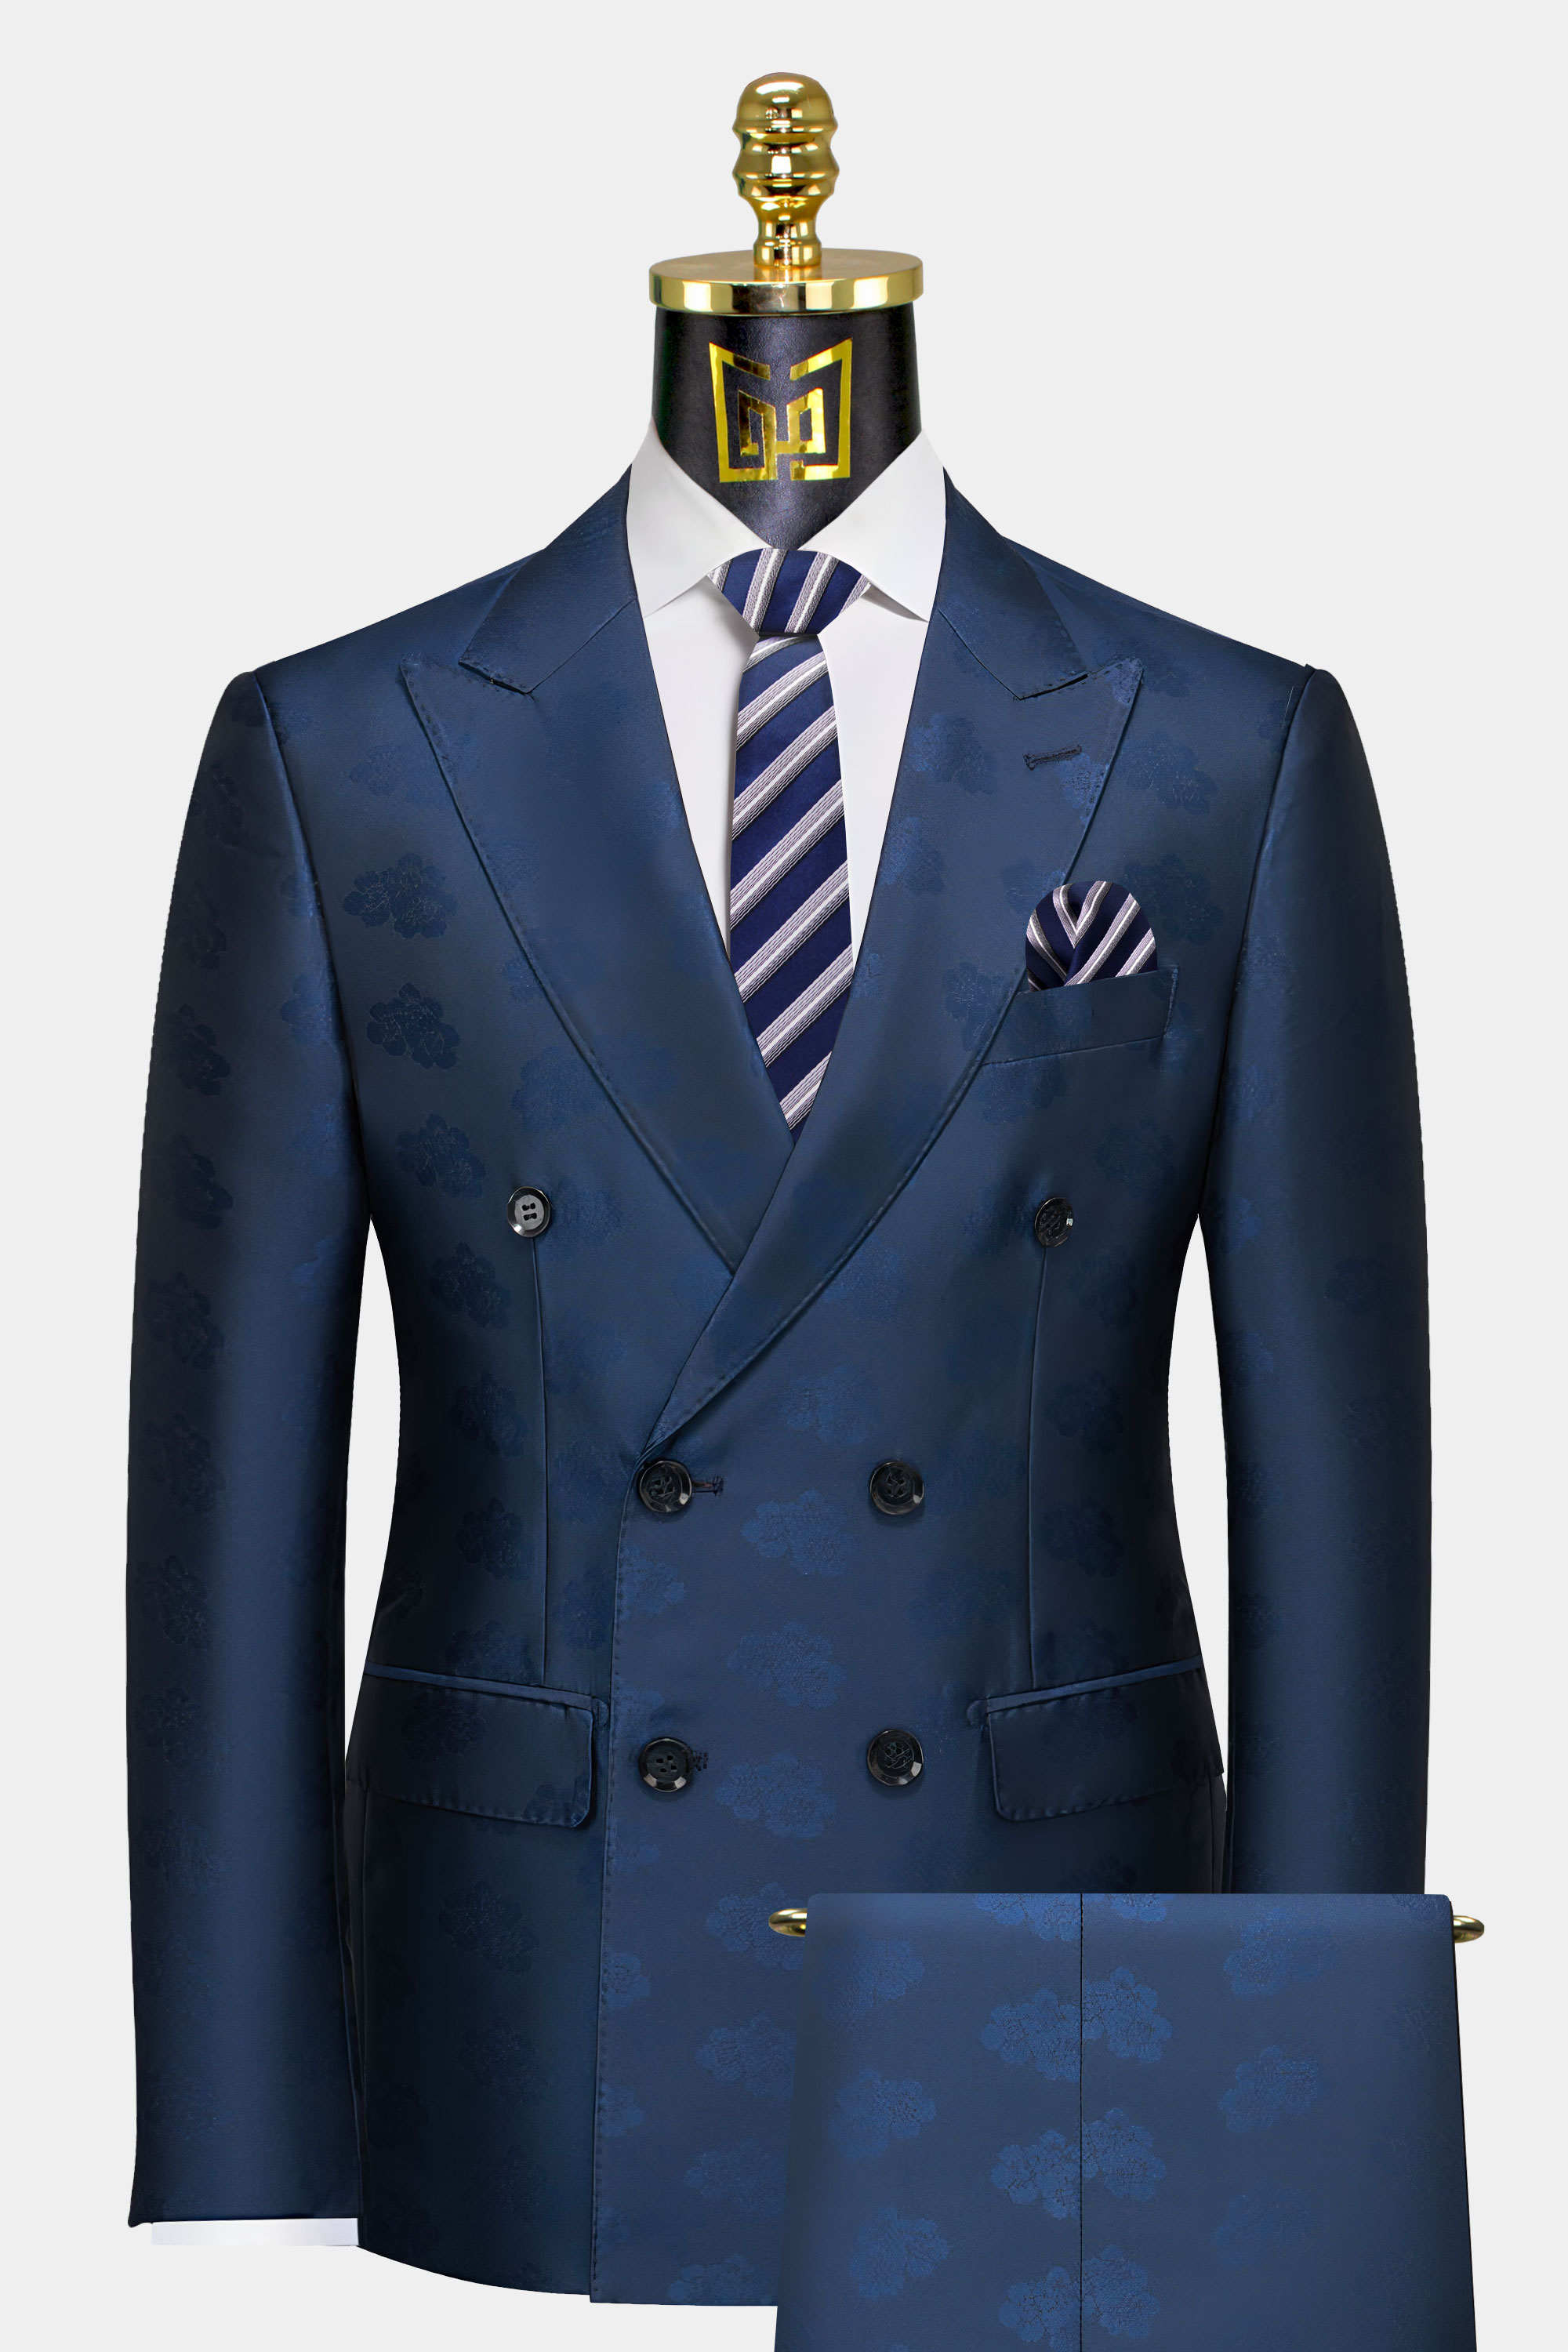 Double-Breasted-Dark-Blue-Suit-For-Men-Groom-Wedding-Prom-Suit-from-Gentlemansguru.com